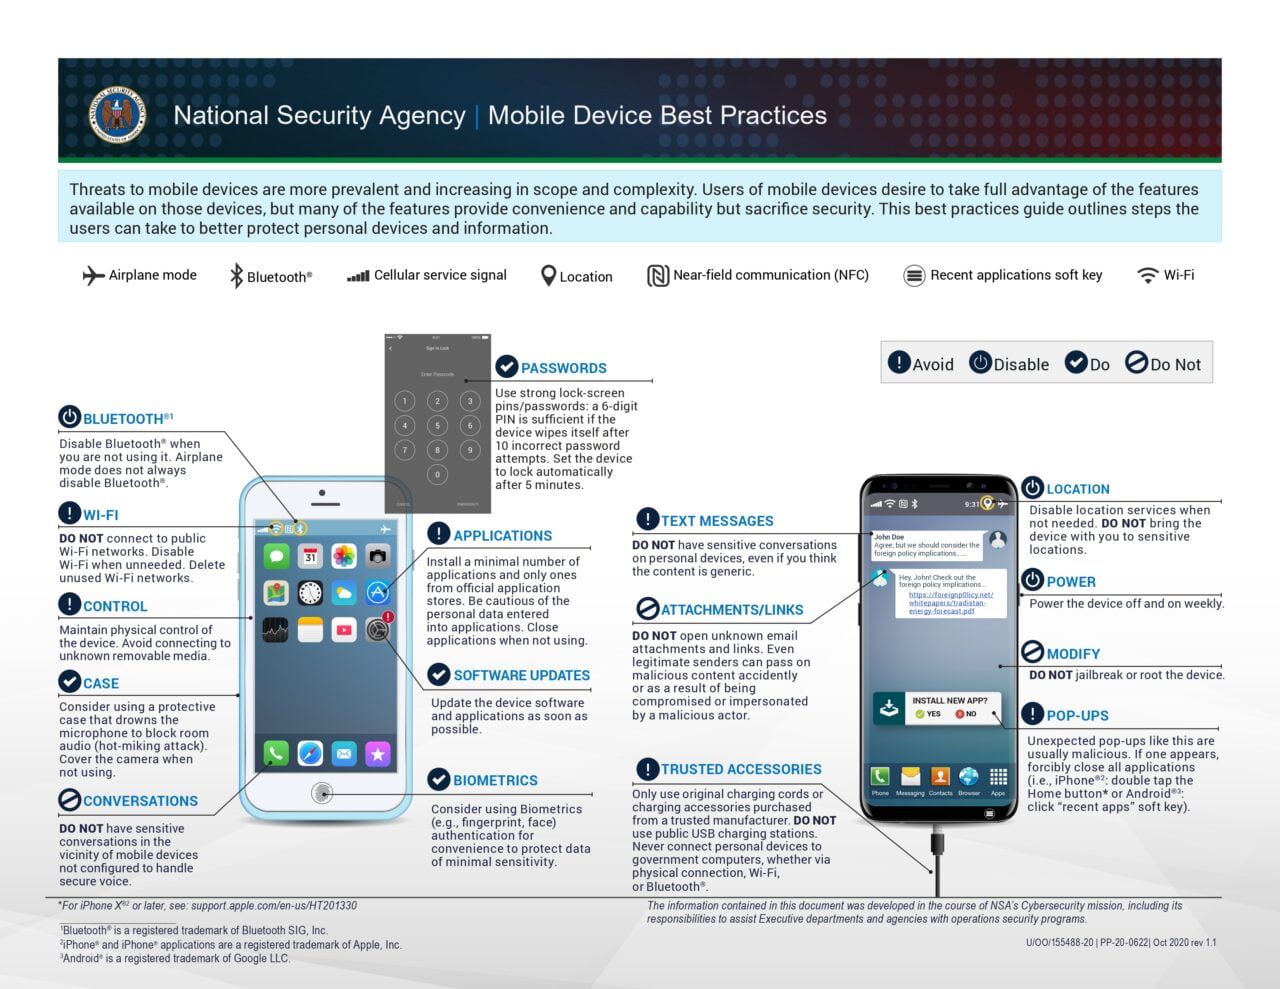 Ulotka przedstawiająca najlepsze praktyki korzystania z urządzeń mobilnych przez Narodową Agencję Bezpieczeństwa (NSA).